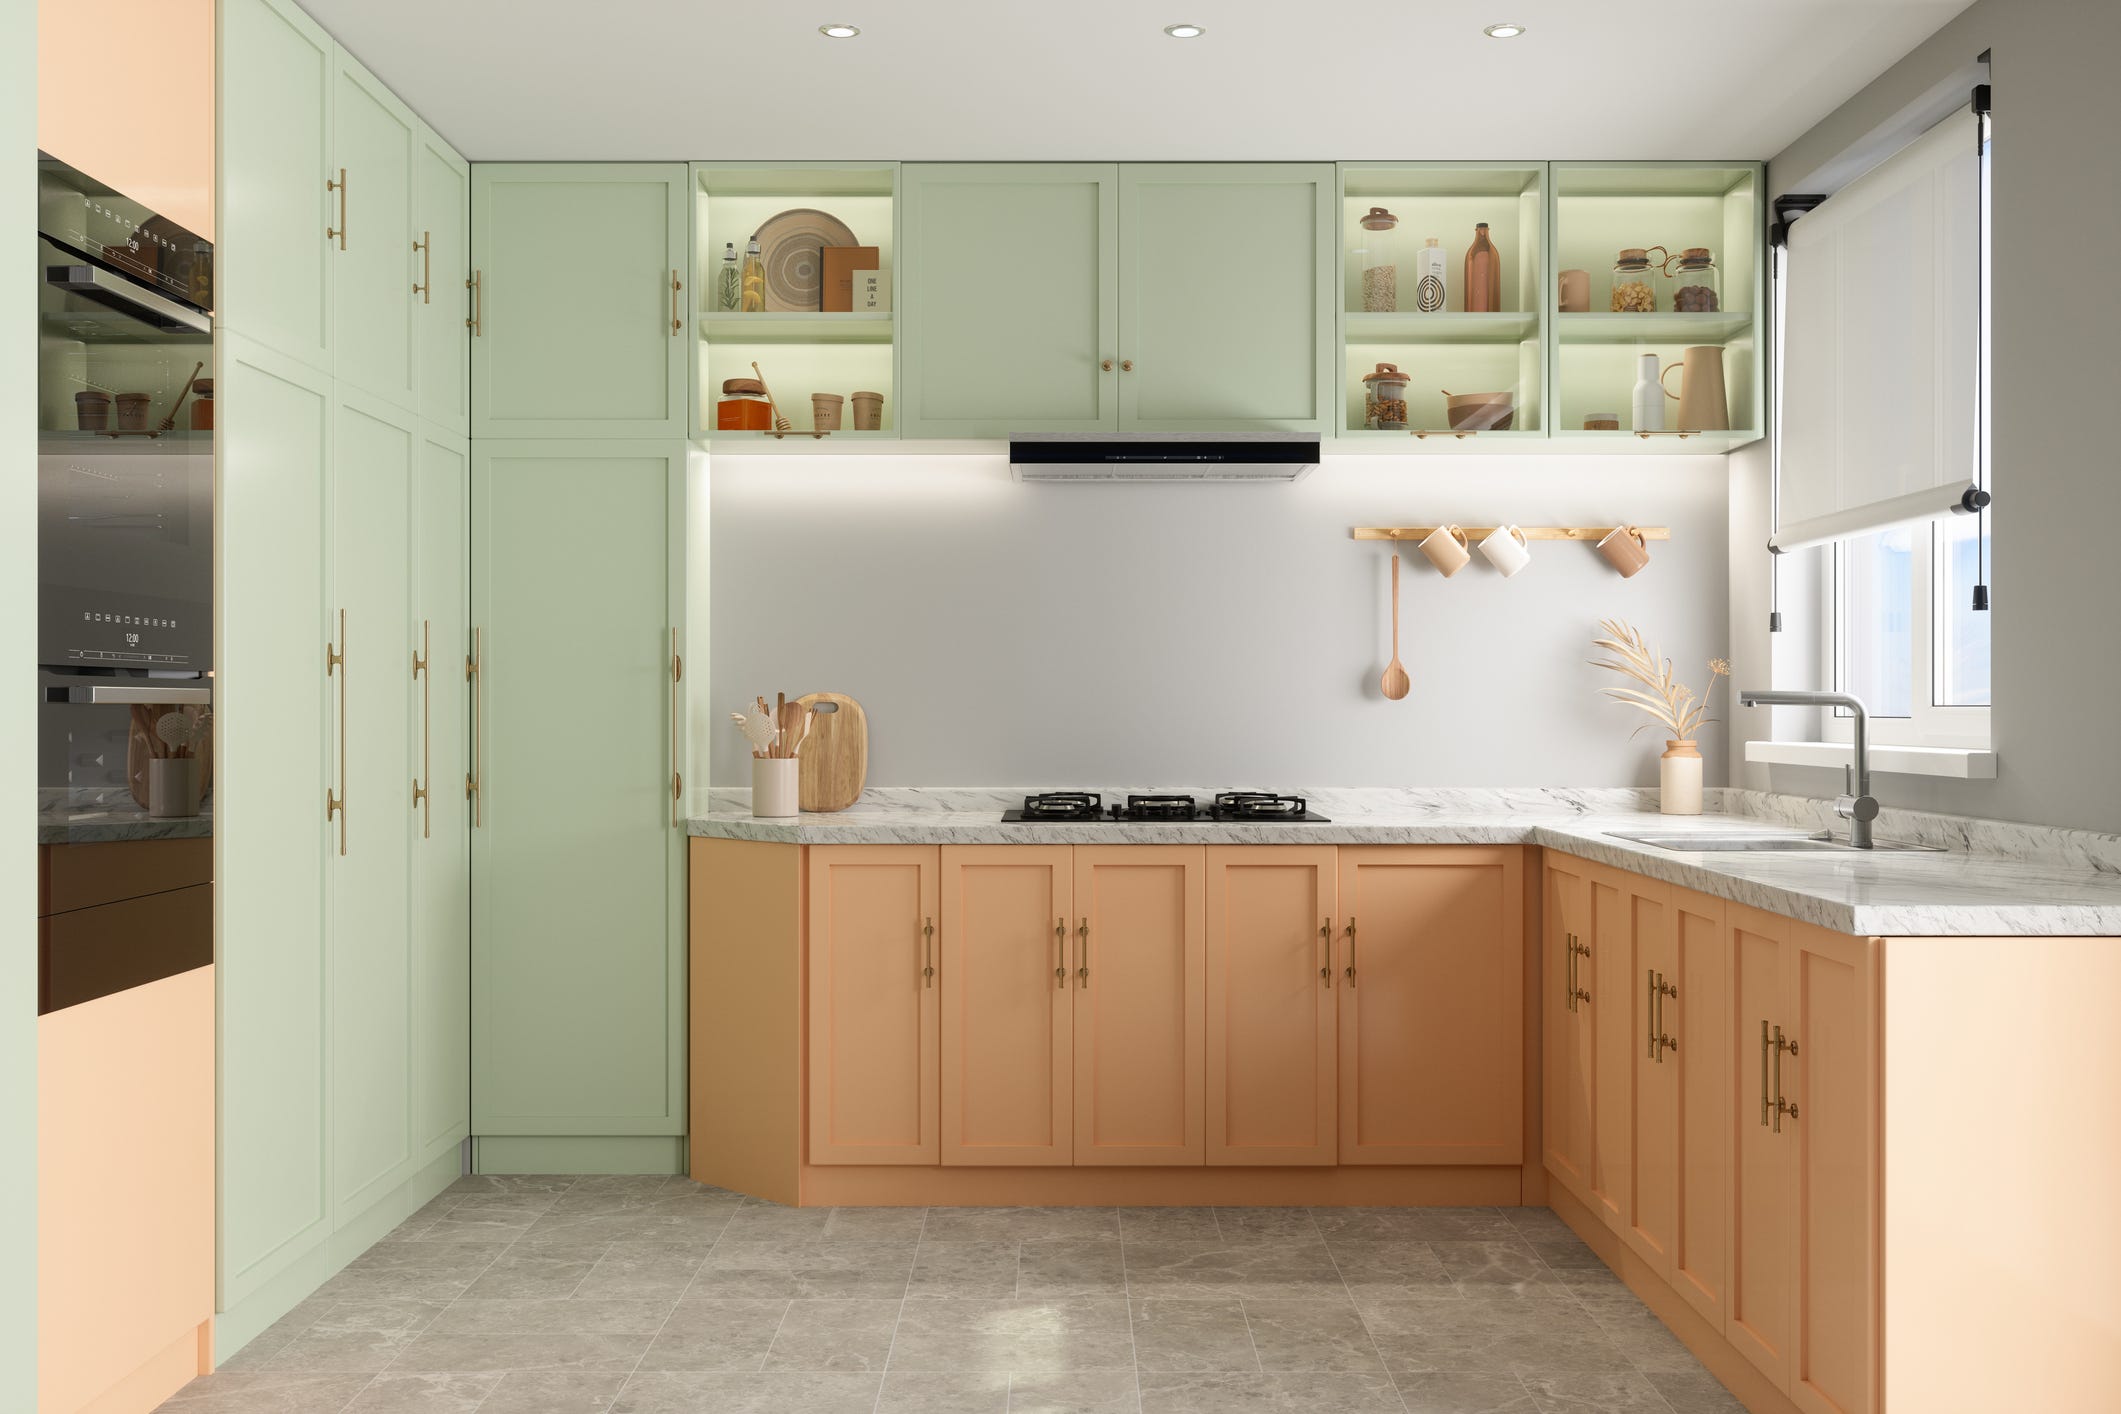 Dünne Shaker-Küchenrahmen mit grünem Oberschrank und orangefarbenem Unterschrank sowie schlichter weißer Rückwand ohne Fliesen